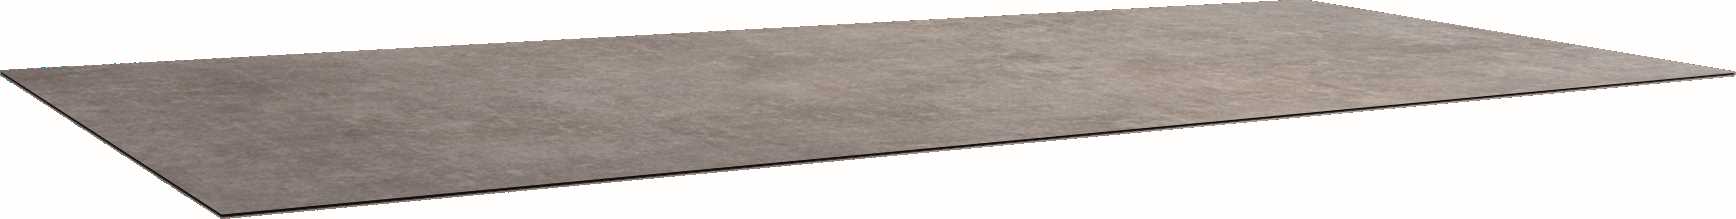 STERN Tischplatte SILVERSTAR 2.0 200x100 cm Dekor Metallic grau